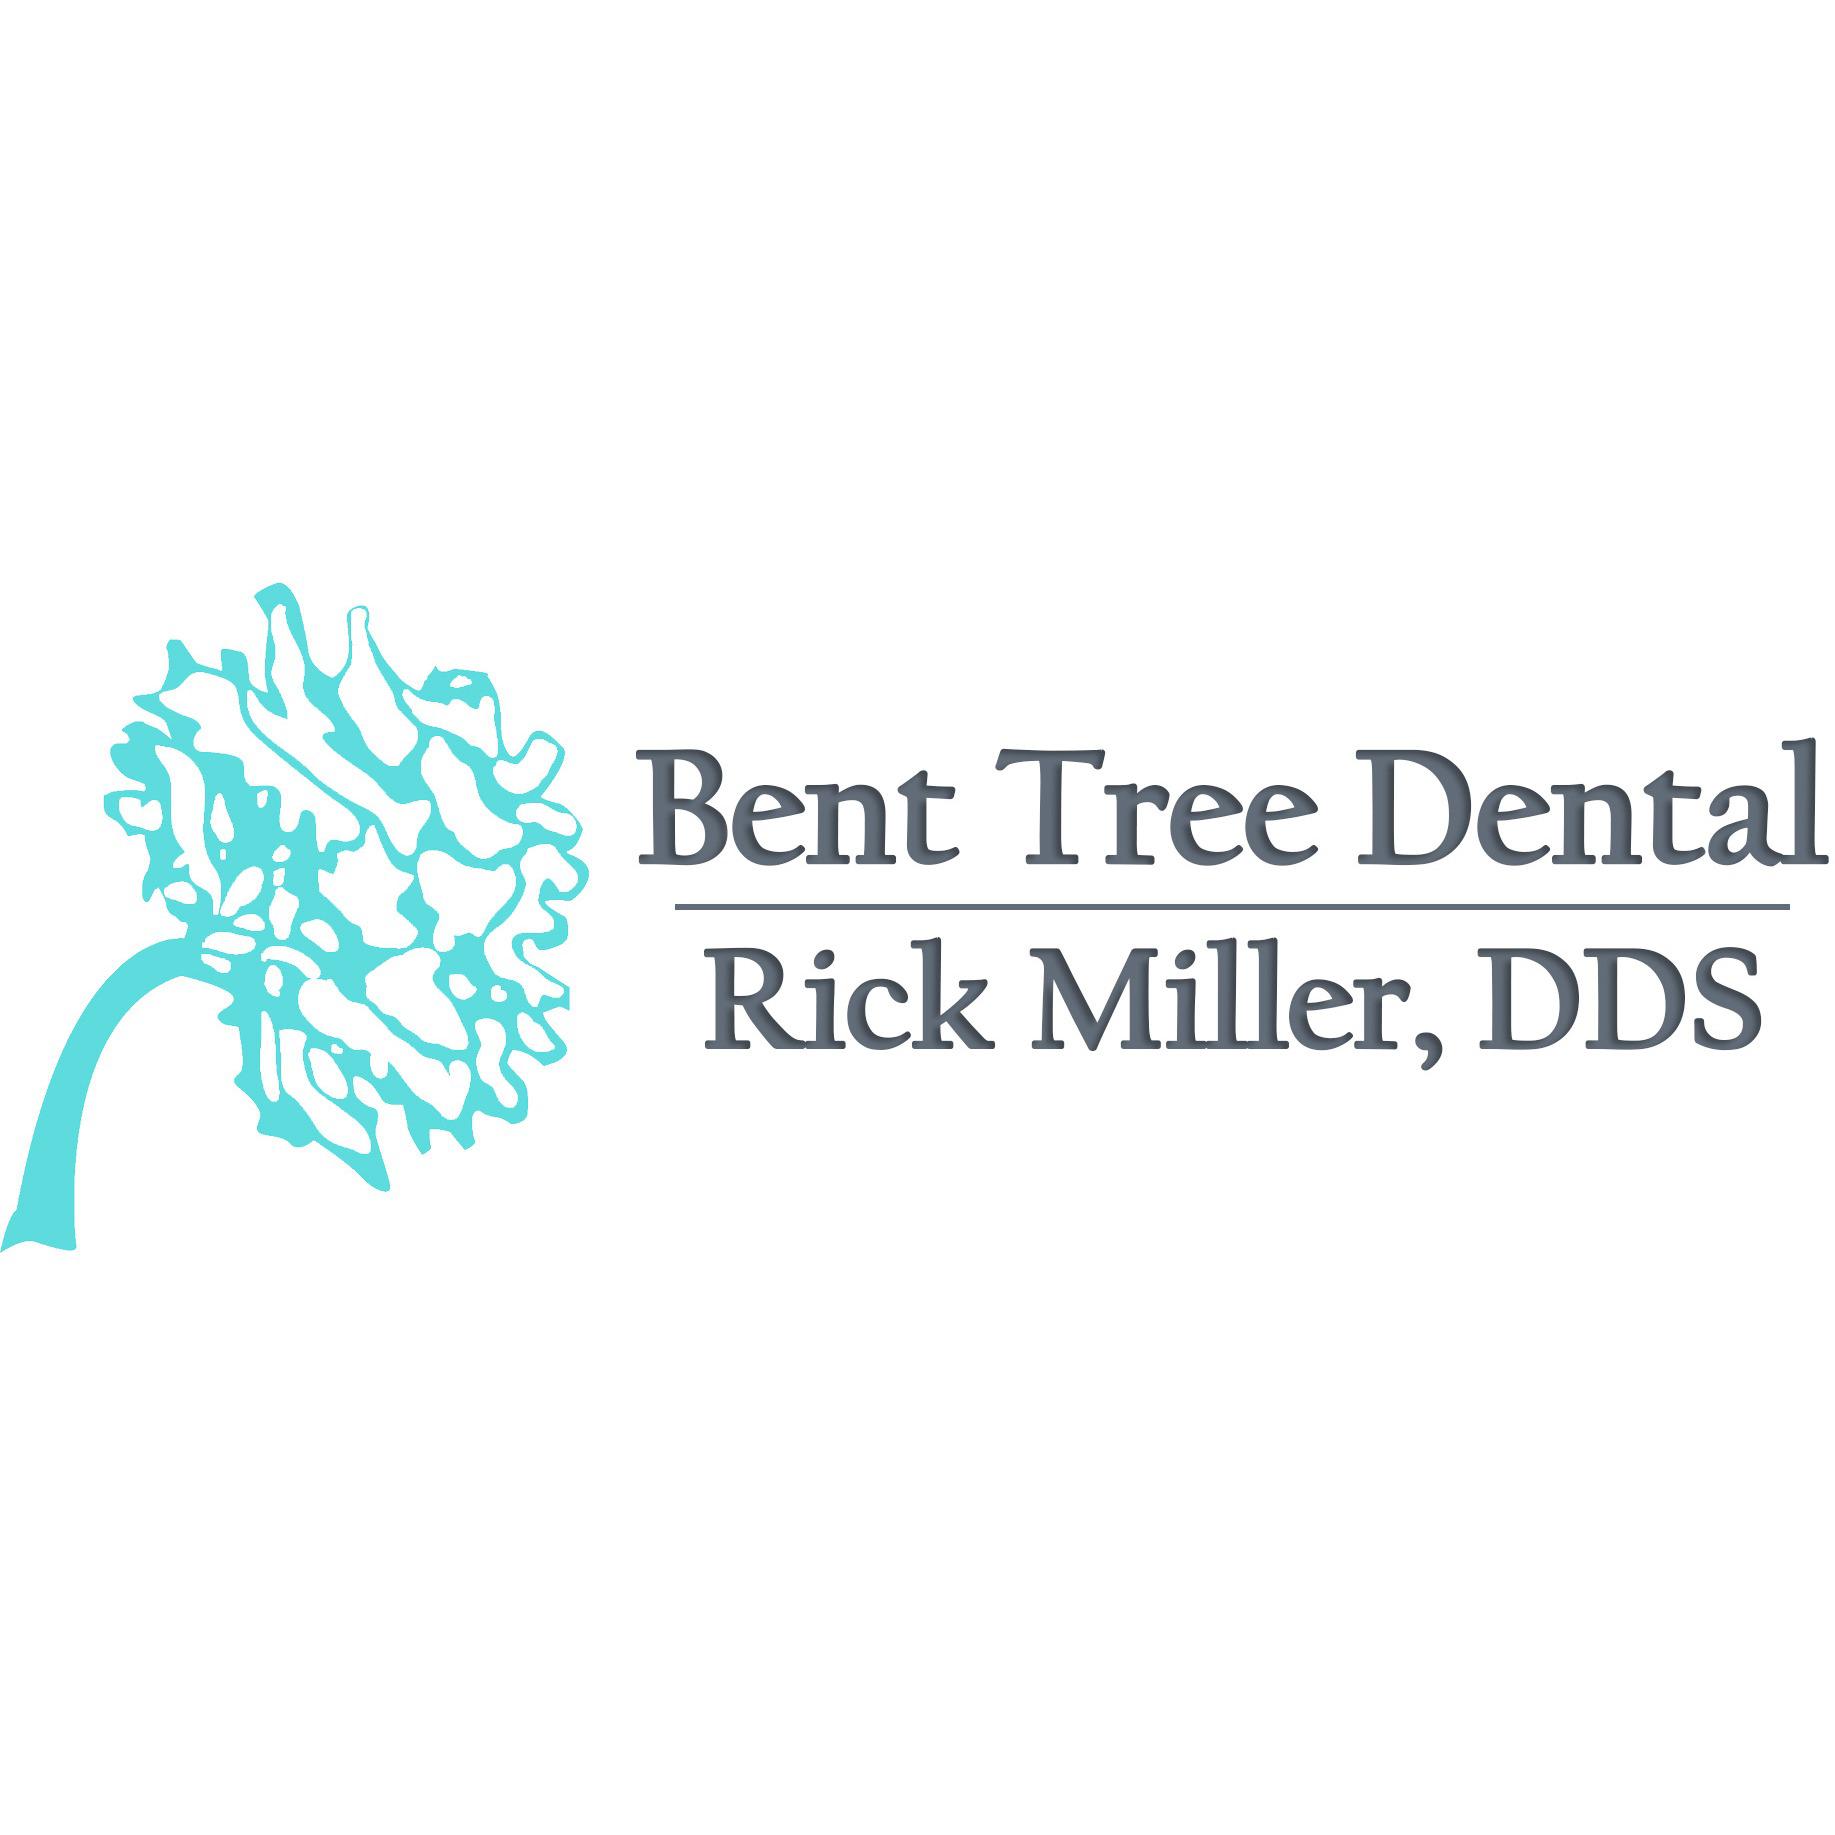 Bent Tree Dental - Dr. Rick Miller - Dallas, TX 75287 - (972)833-7785 | ShowMeLocal.com